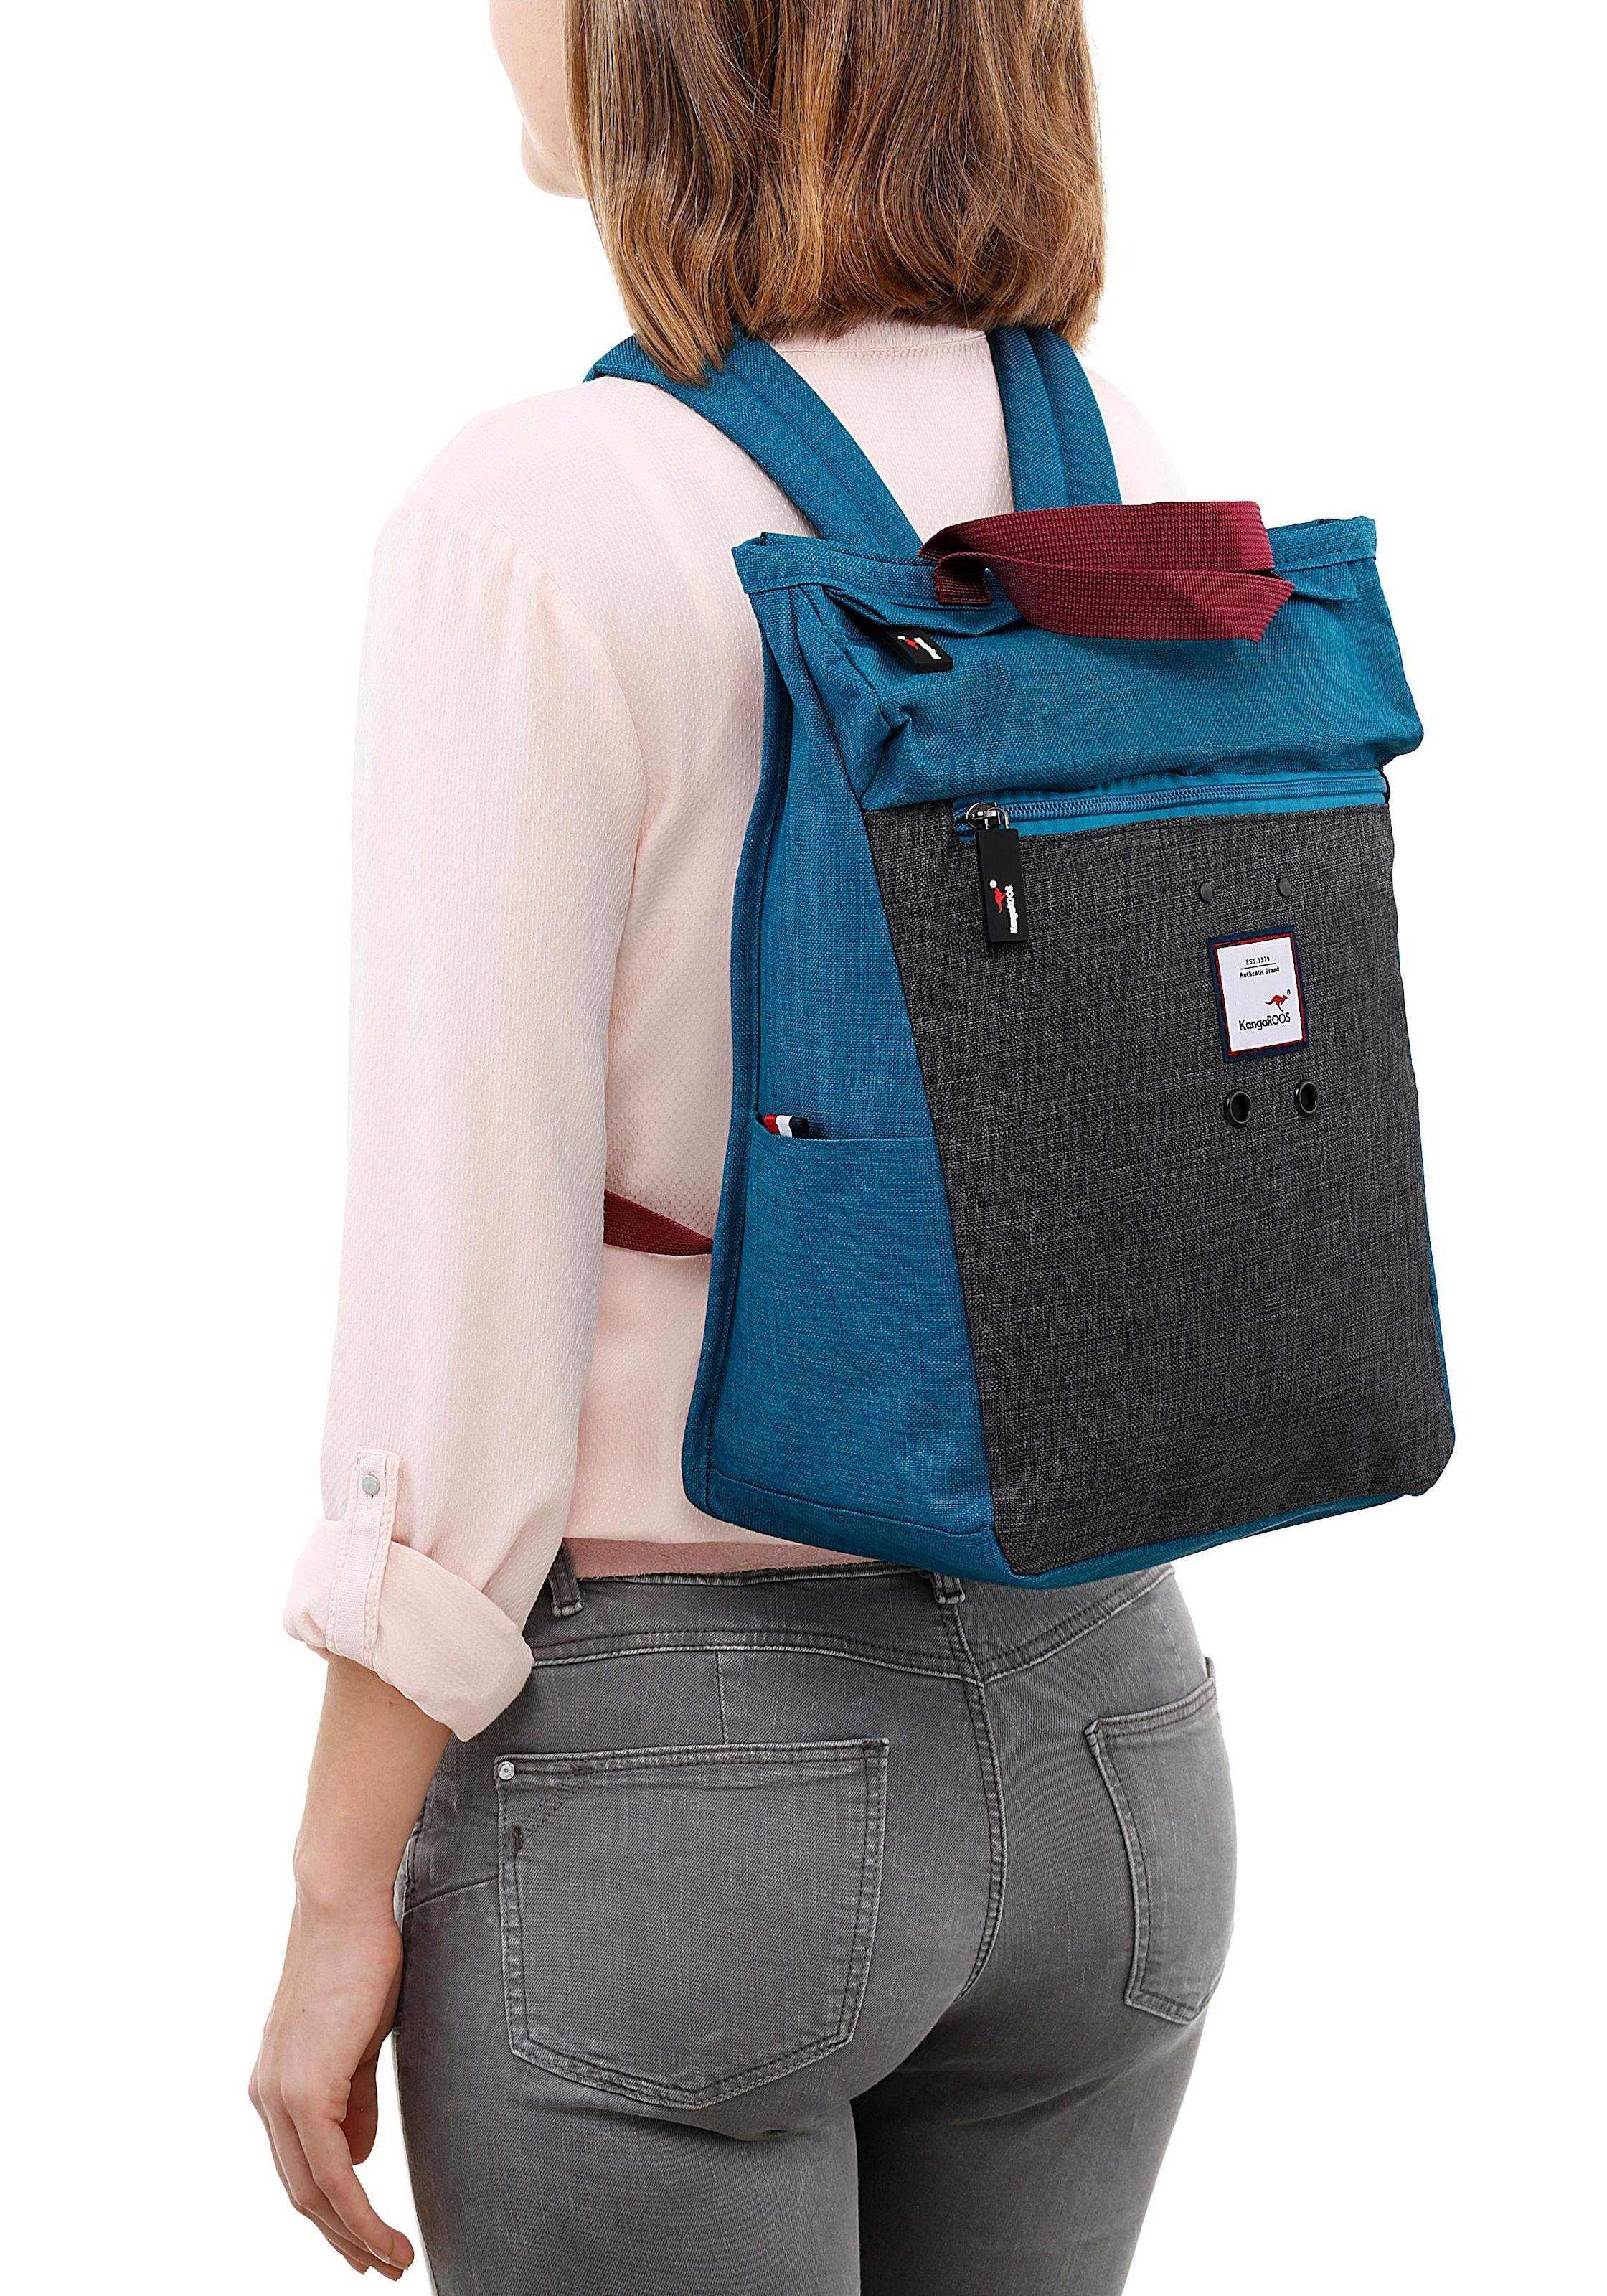 KangaROOS Cityrucksack, kann auch als Tasche getragen werden